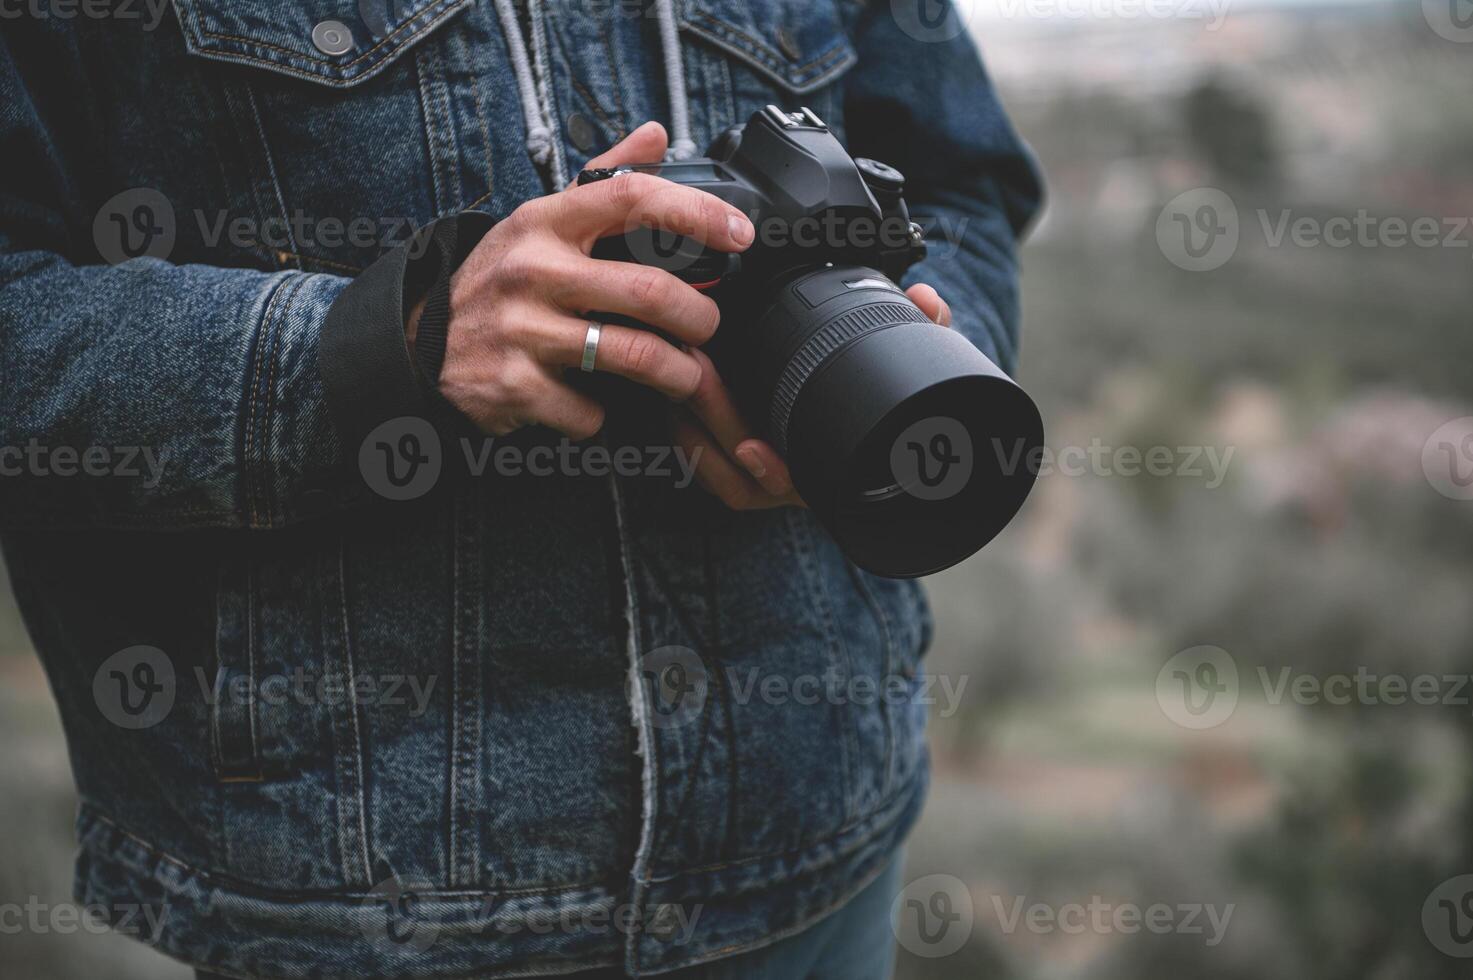 detailopname professioneel camera in de handen van mannetje reiziger fotograaf foto